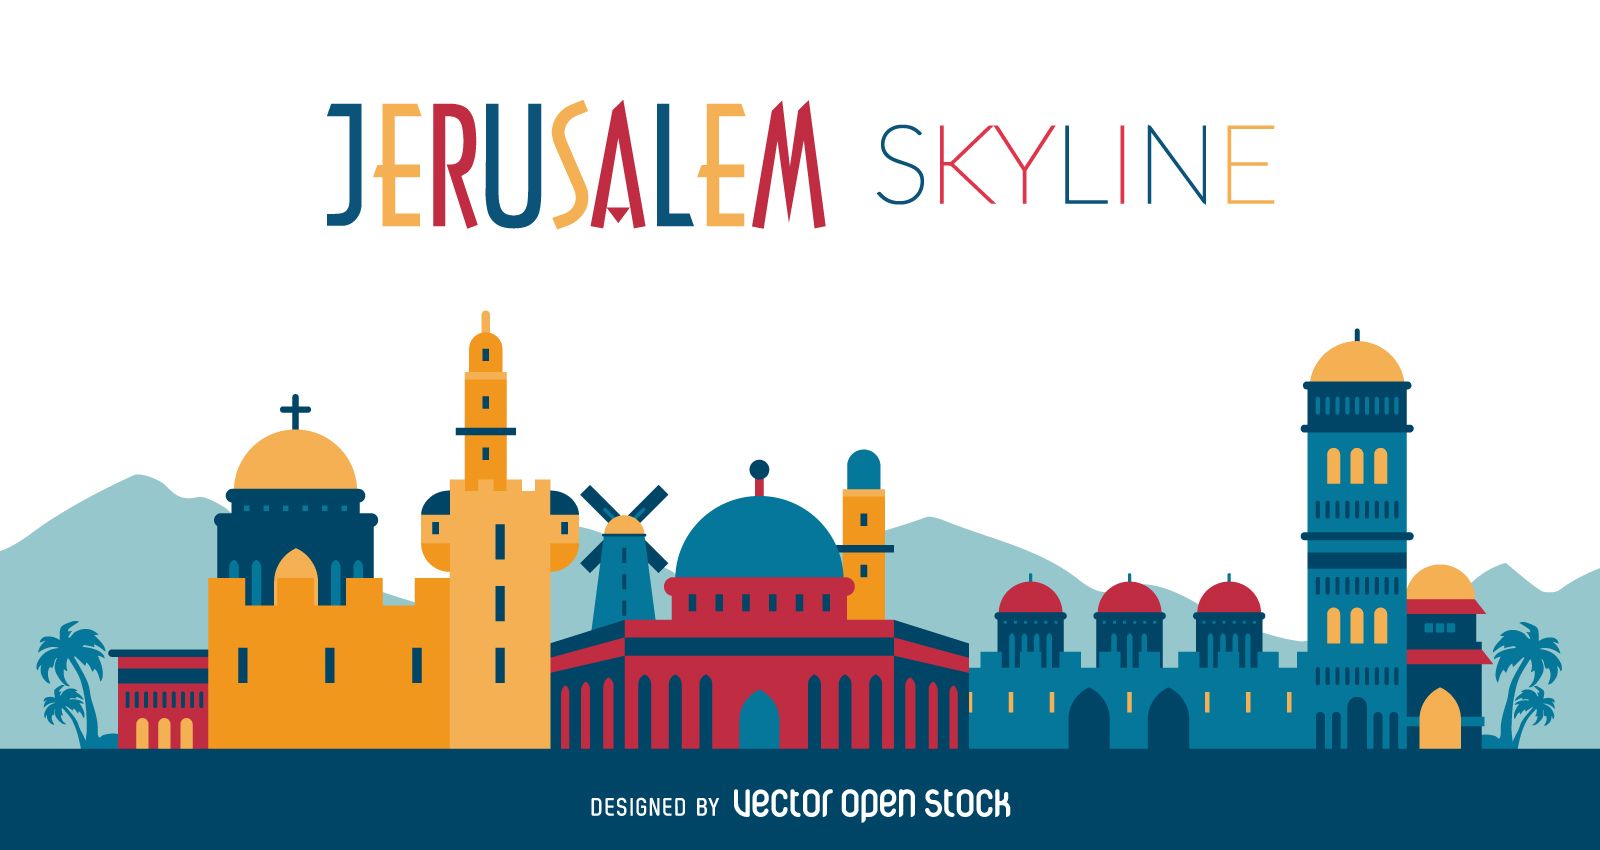 Jerusalem Skyline Vector At Collection Of Jerusalem